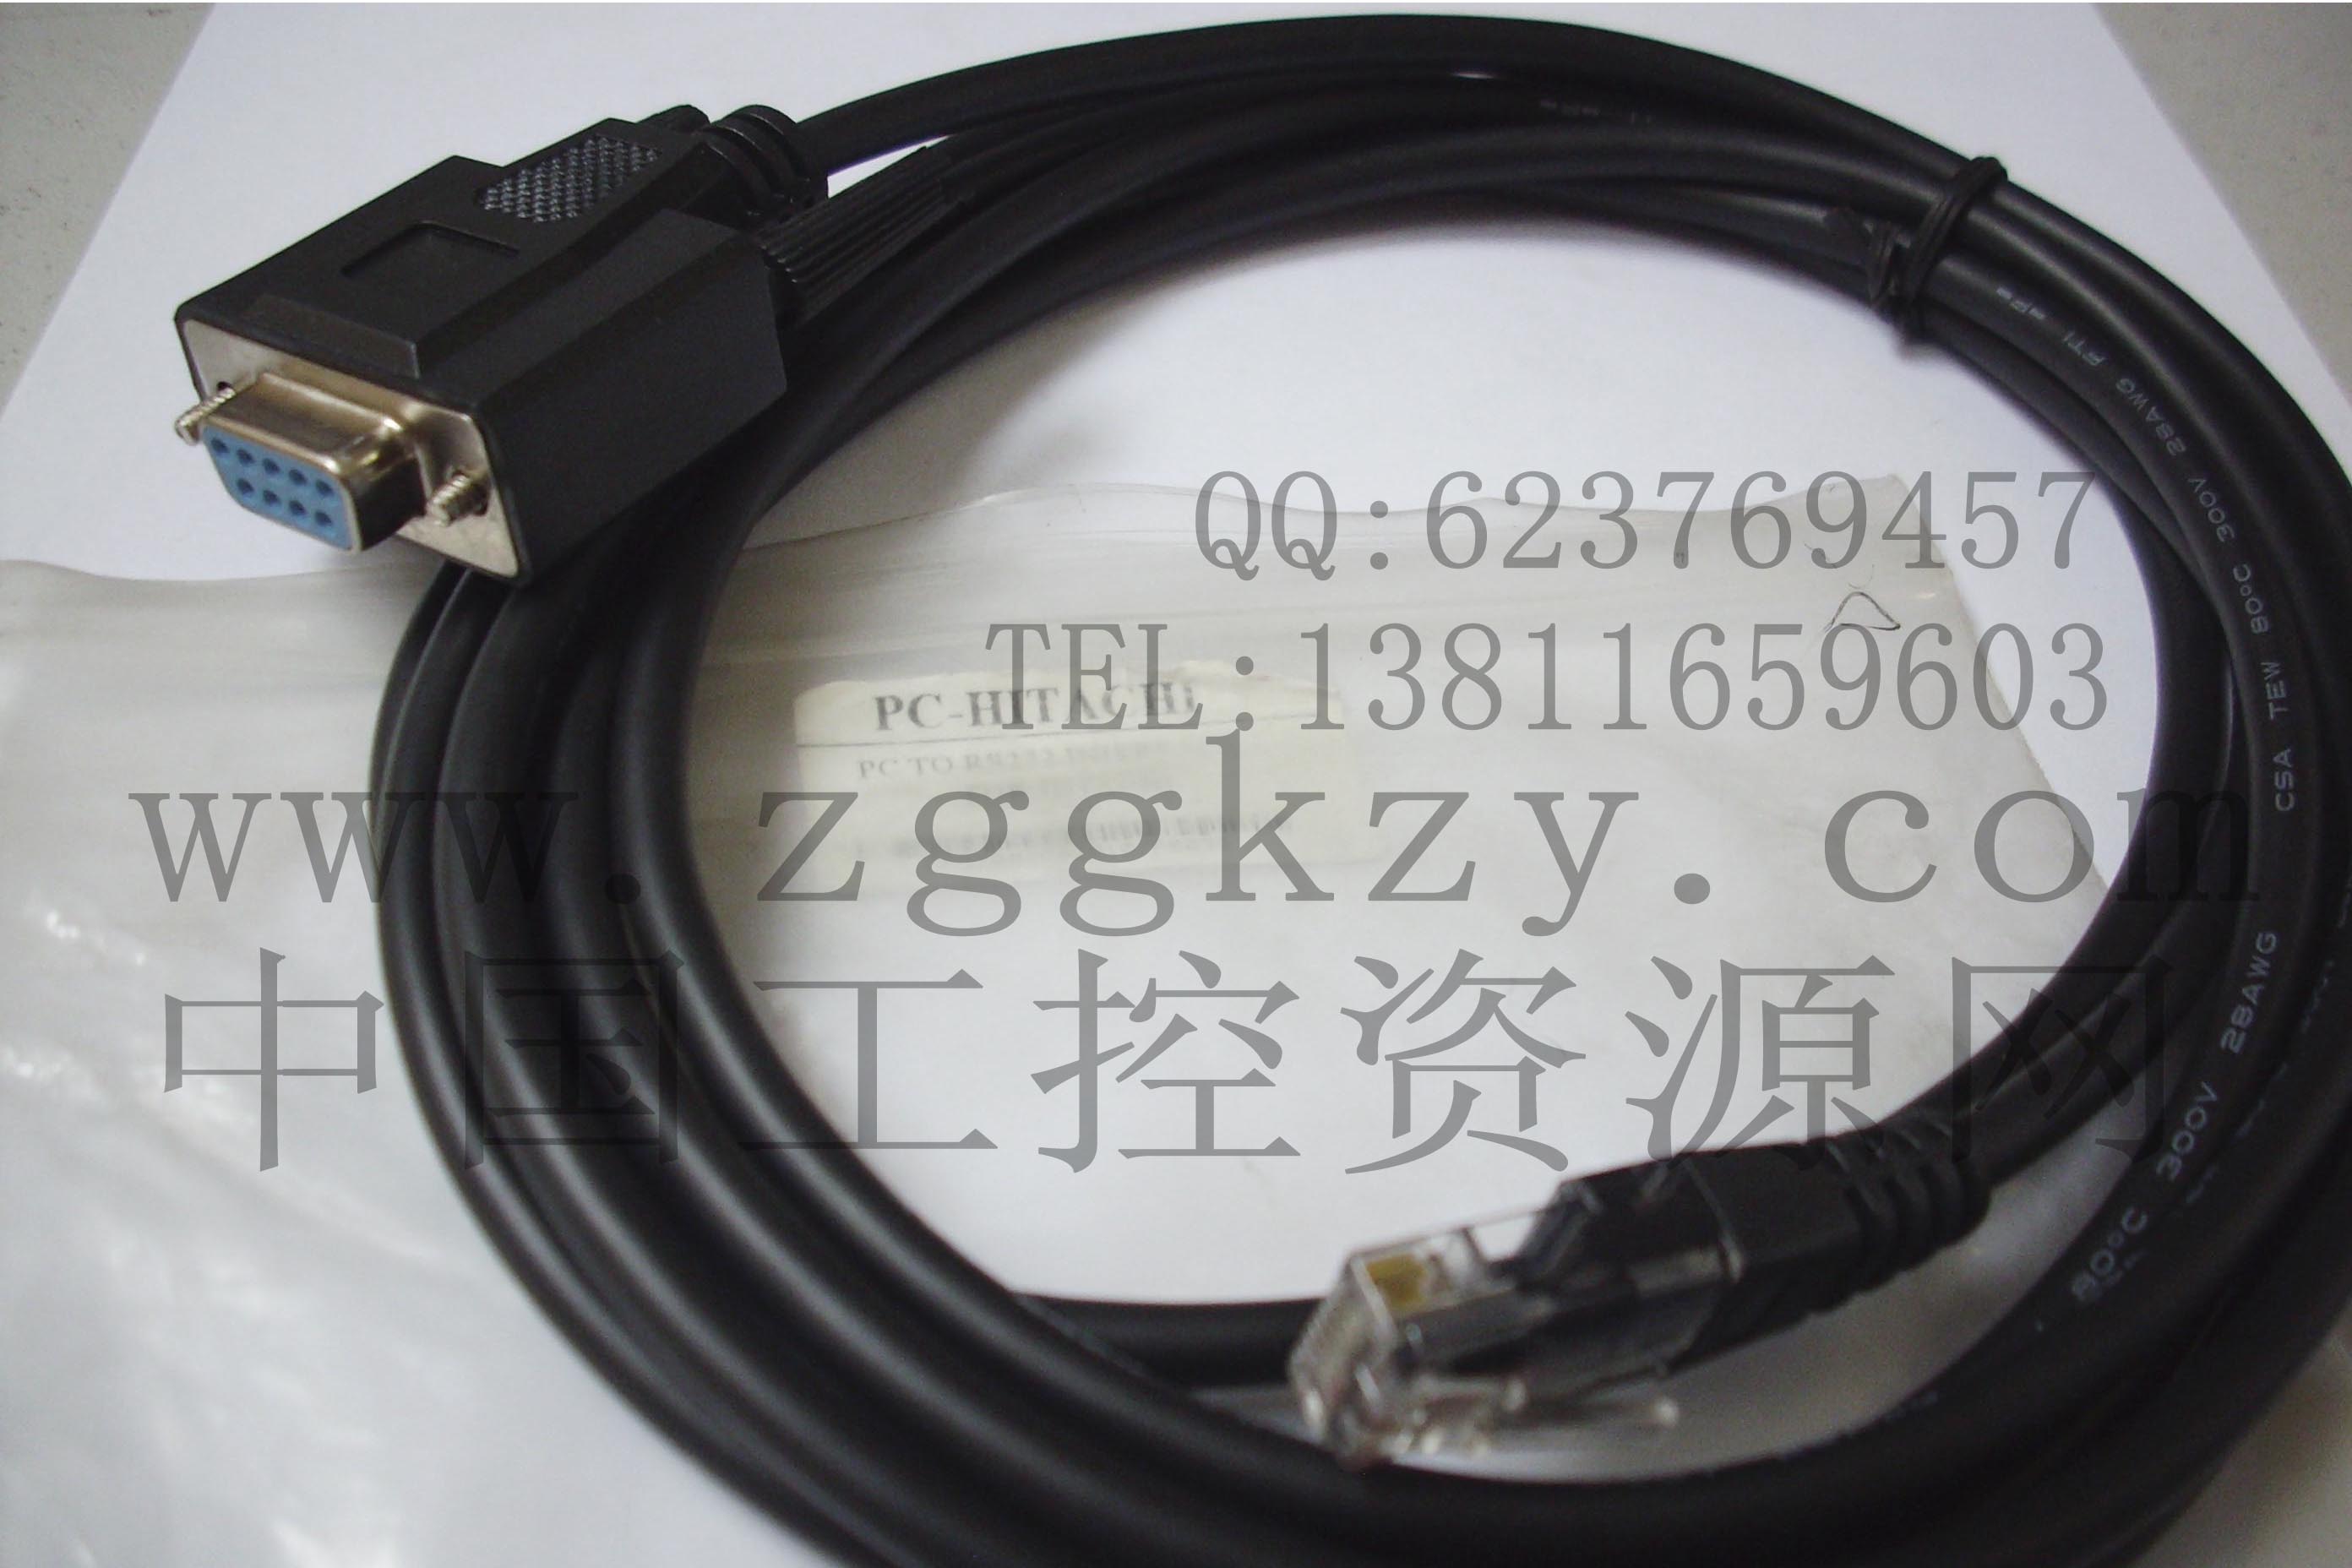 销售海泰克PC-HITACHI编程电缆